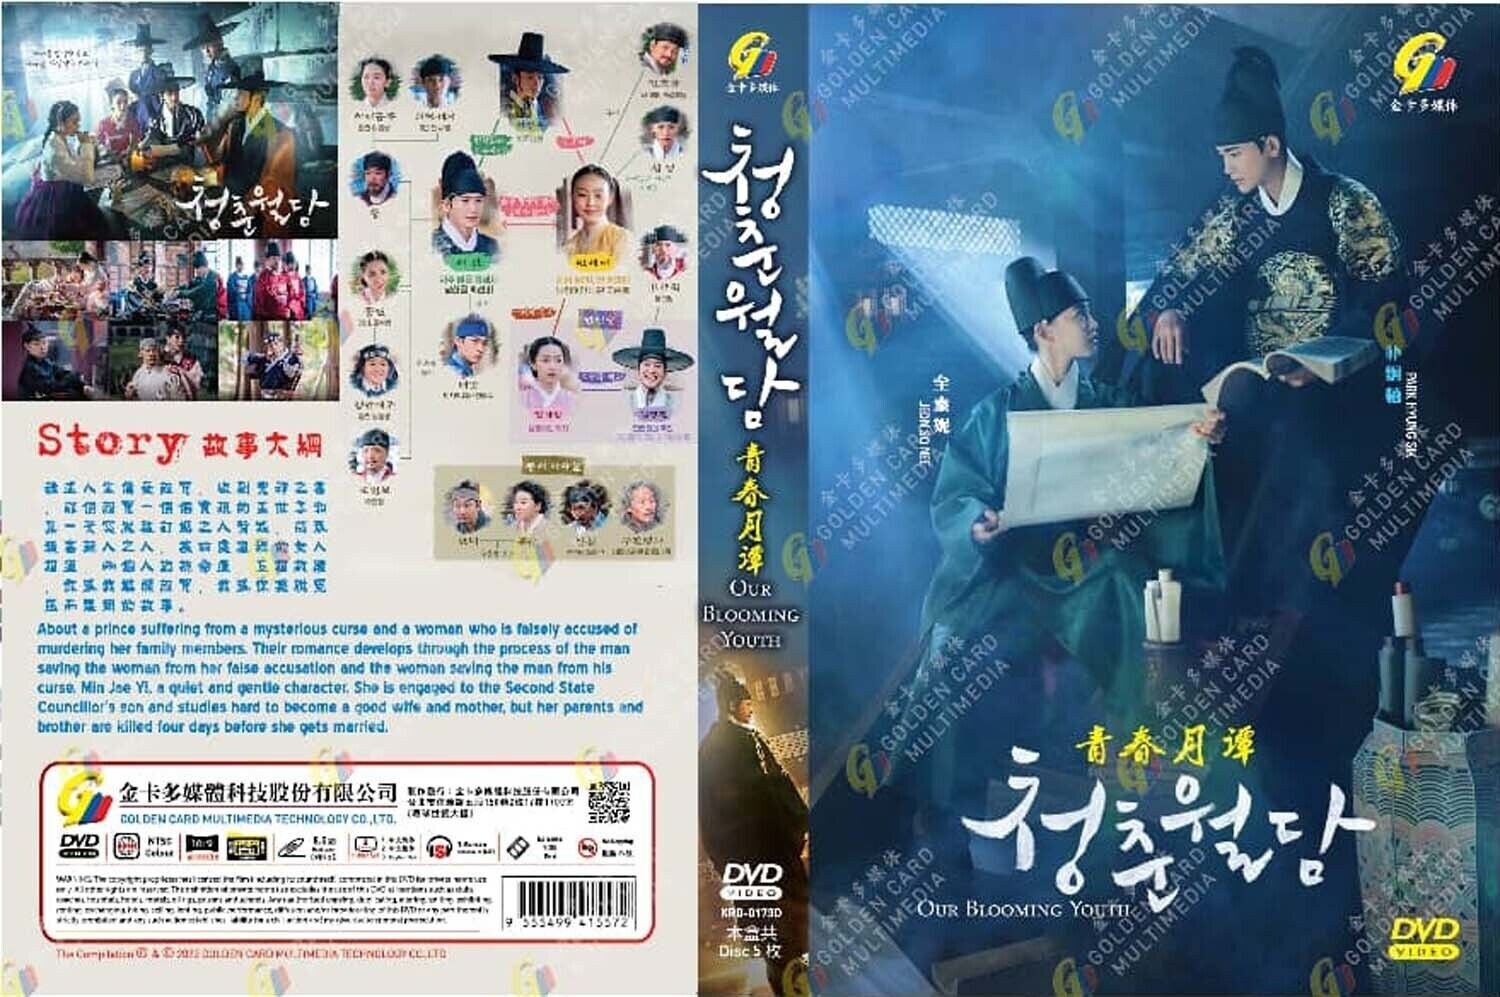 ANIME DVD~ENGLISH DUBBED~Tensai Ouji No Akaji Kokka Saisei  Jutsu(1-12End)+GIFT